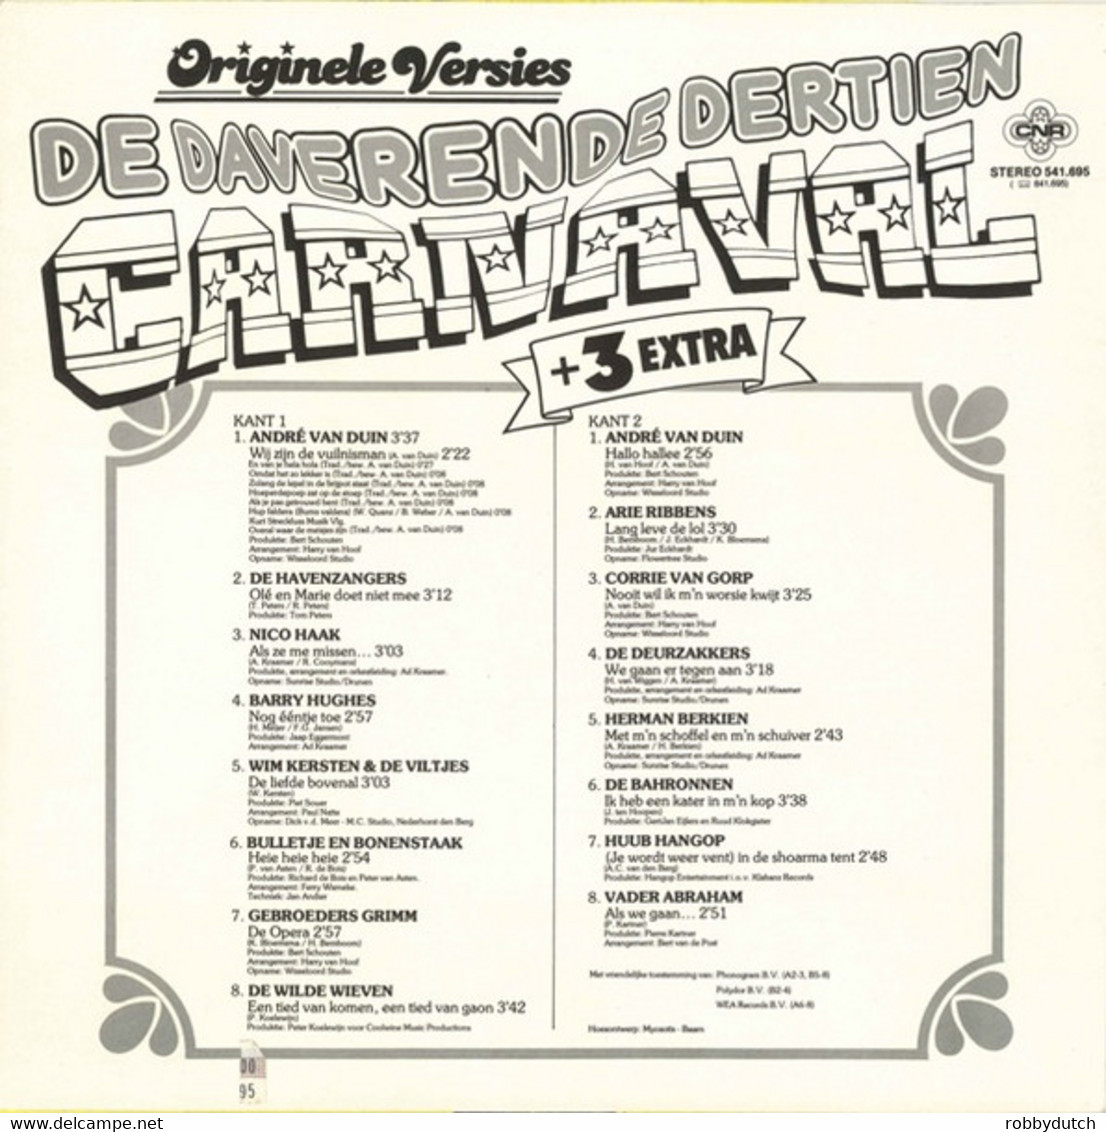 * LP *  DE DAVERENDE DERTIEN CARNAVAL + 3 EXTRA (Holland 1984) - Other - Dutch Music